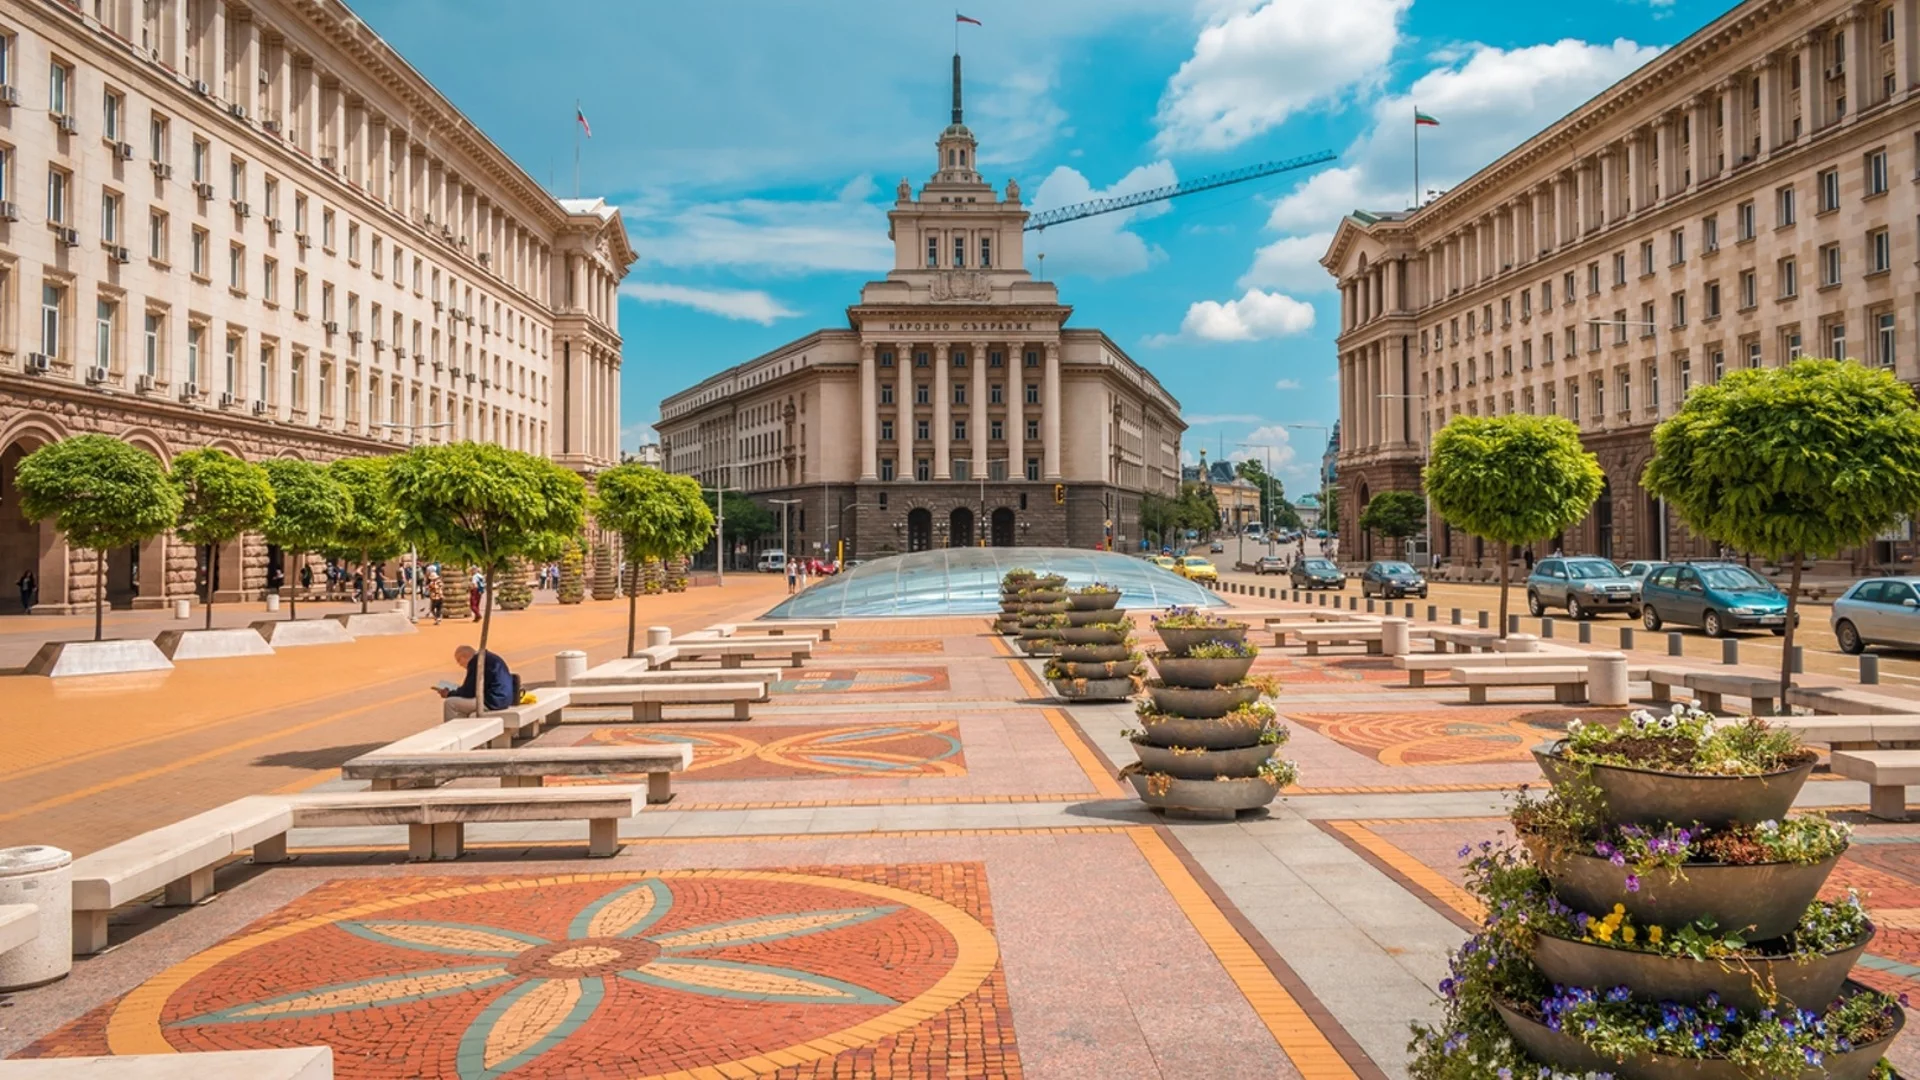 София напредва в класацията на най-добрите градове за живеене в света